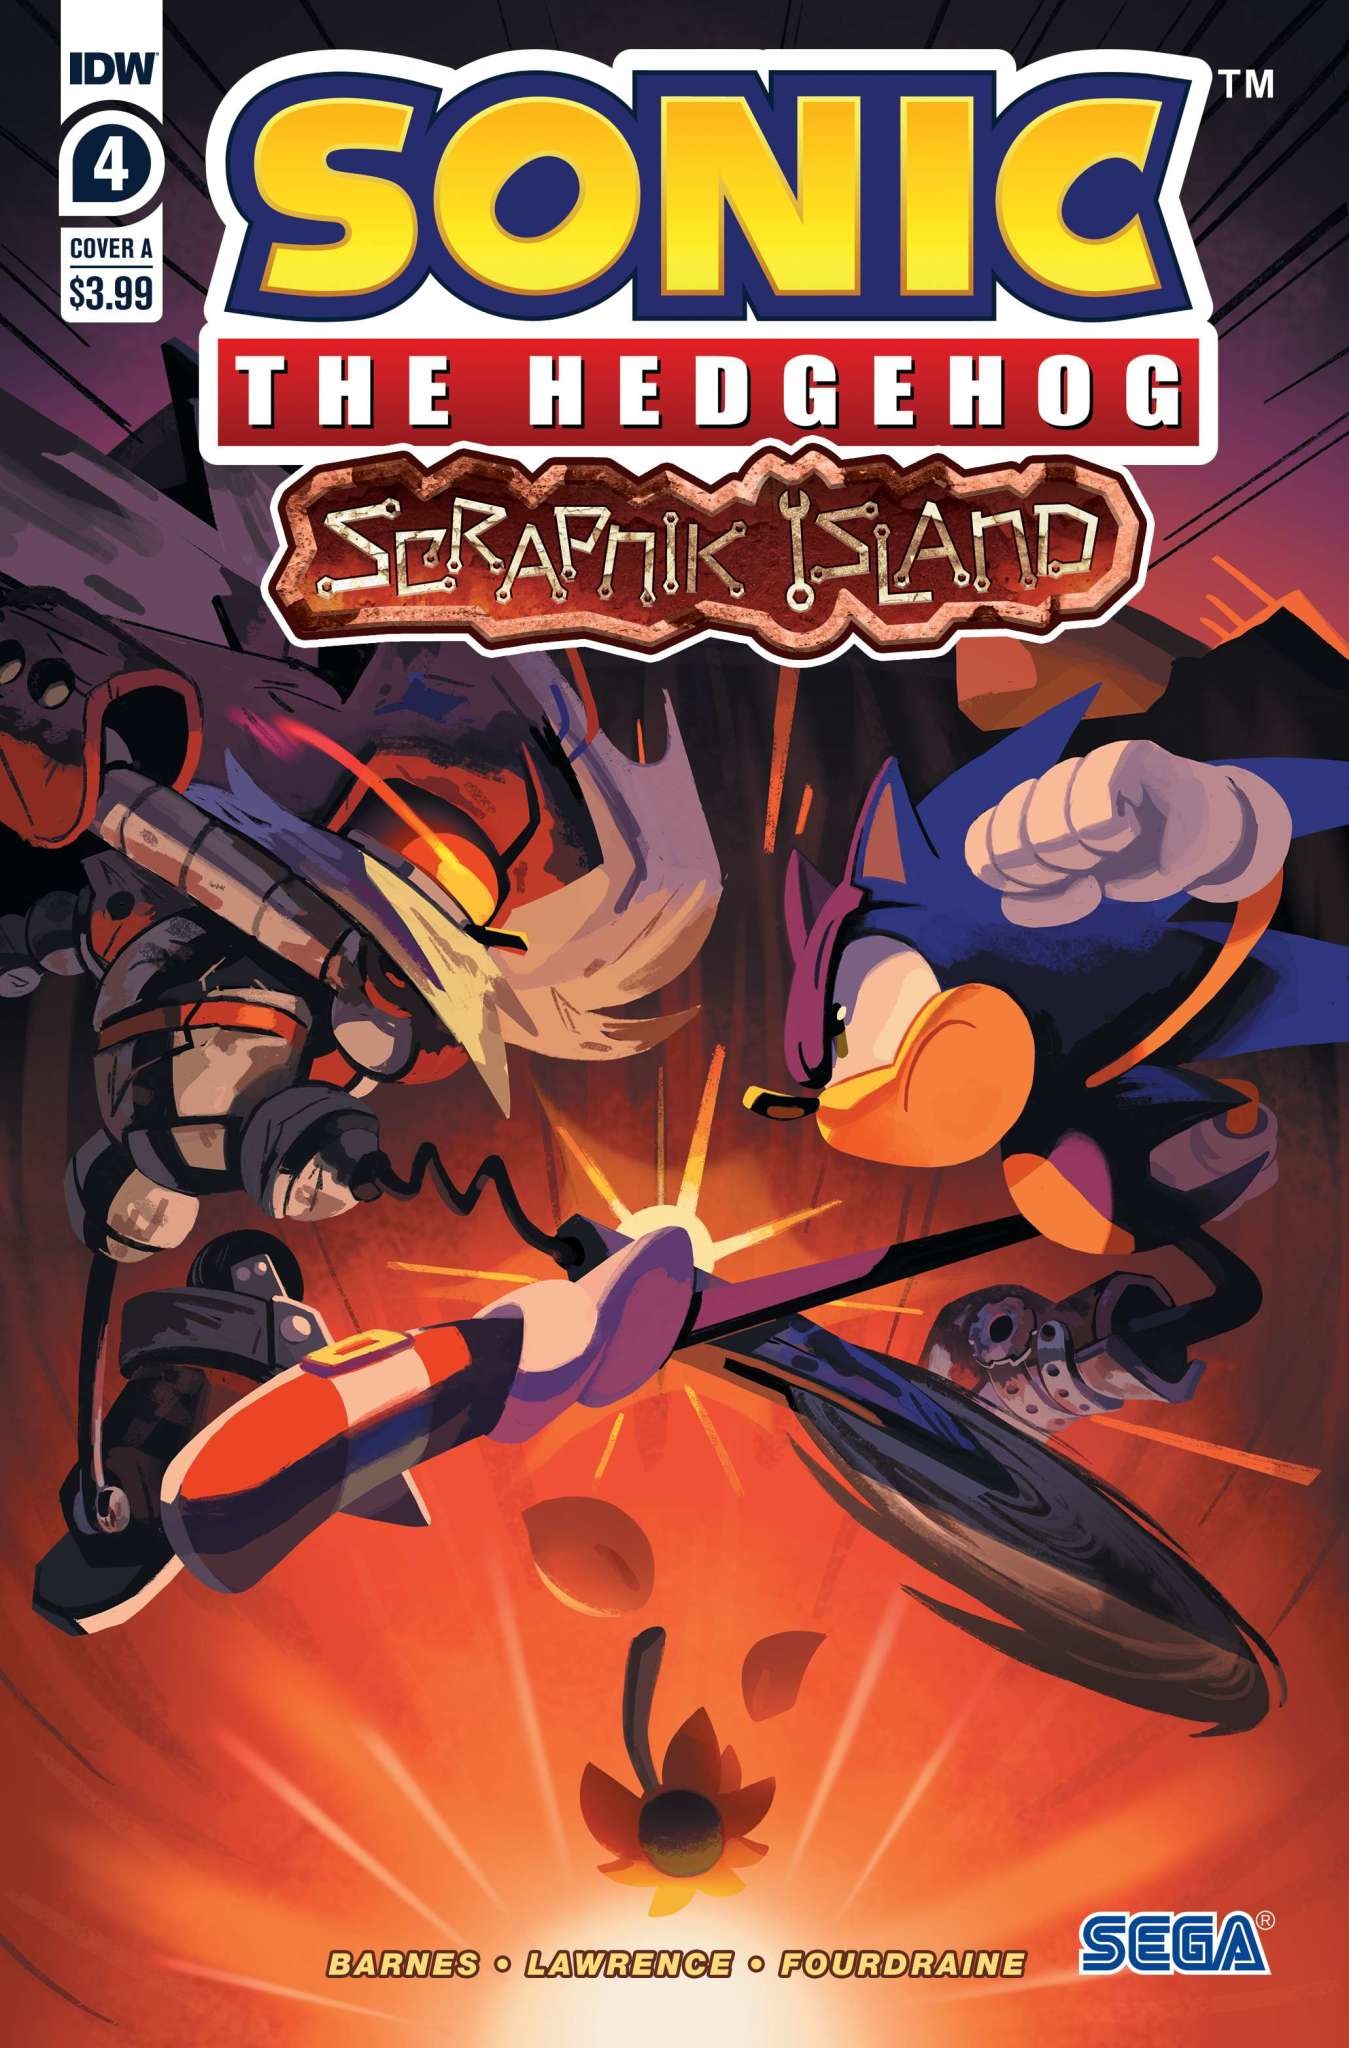 IDW Sonic The Hedgehog: Scrapnik Island #4 Variant A (Fourdraine)